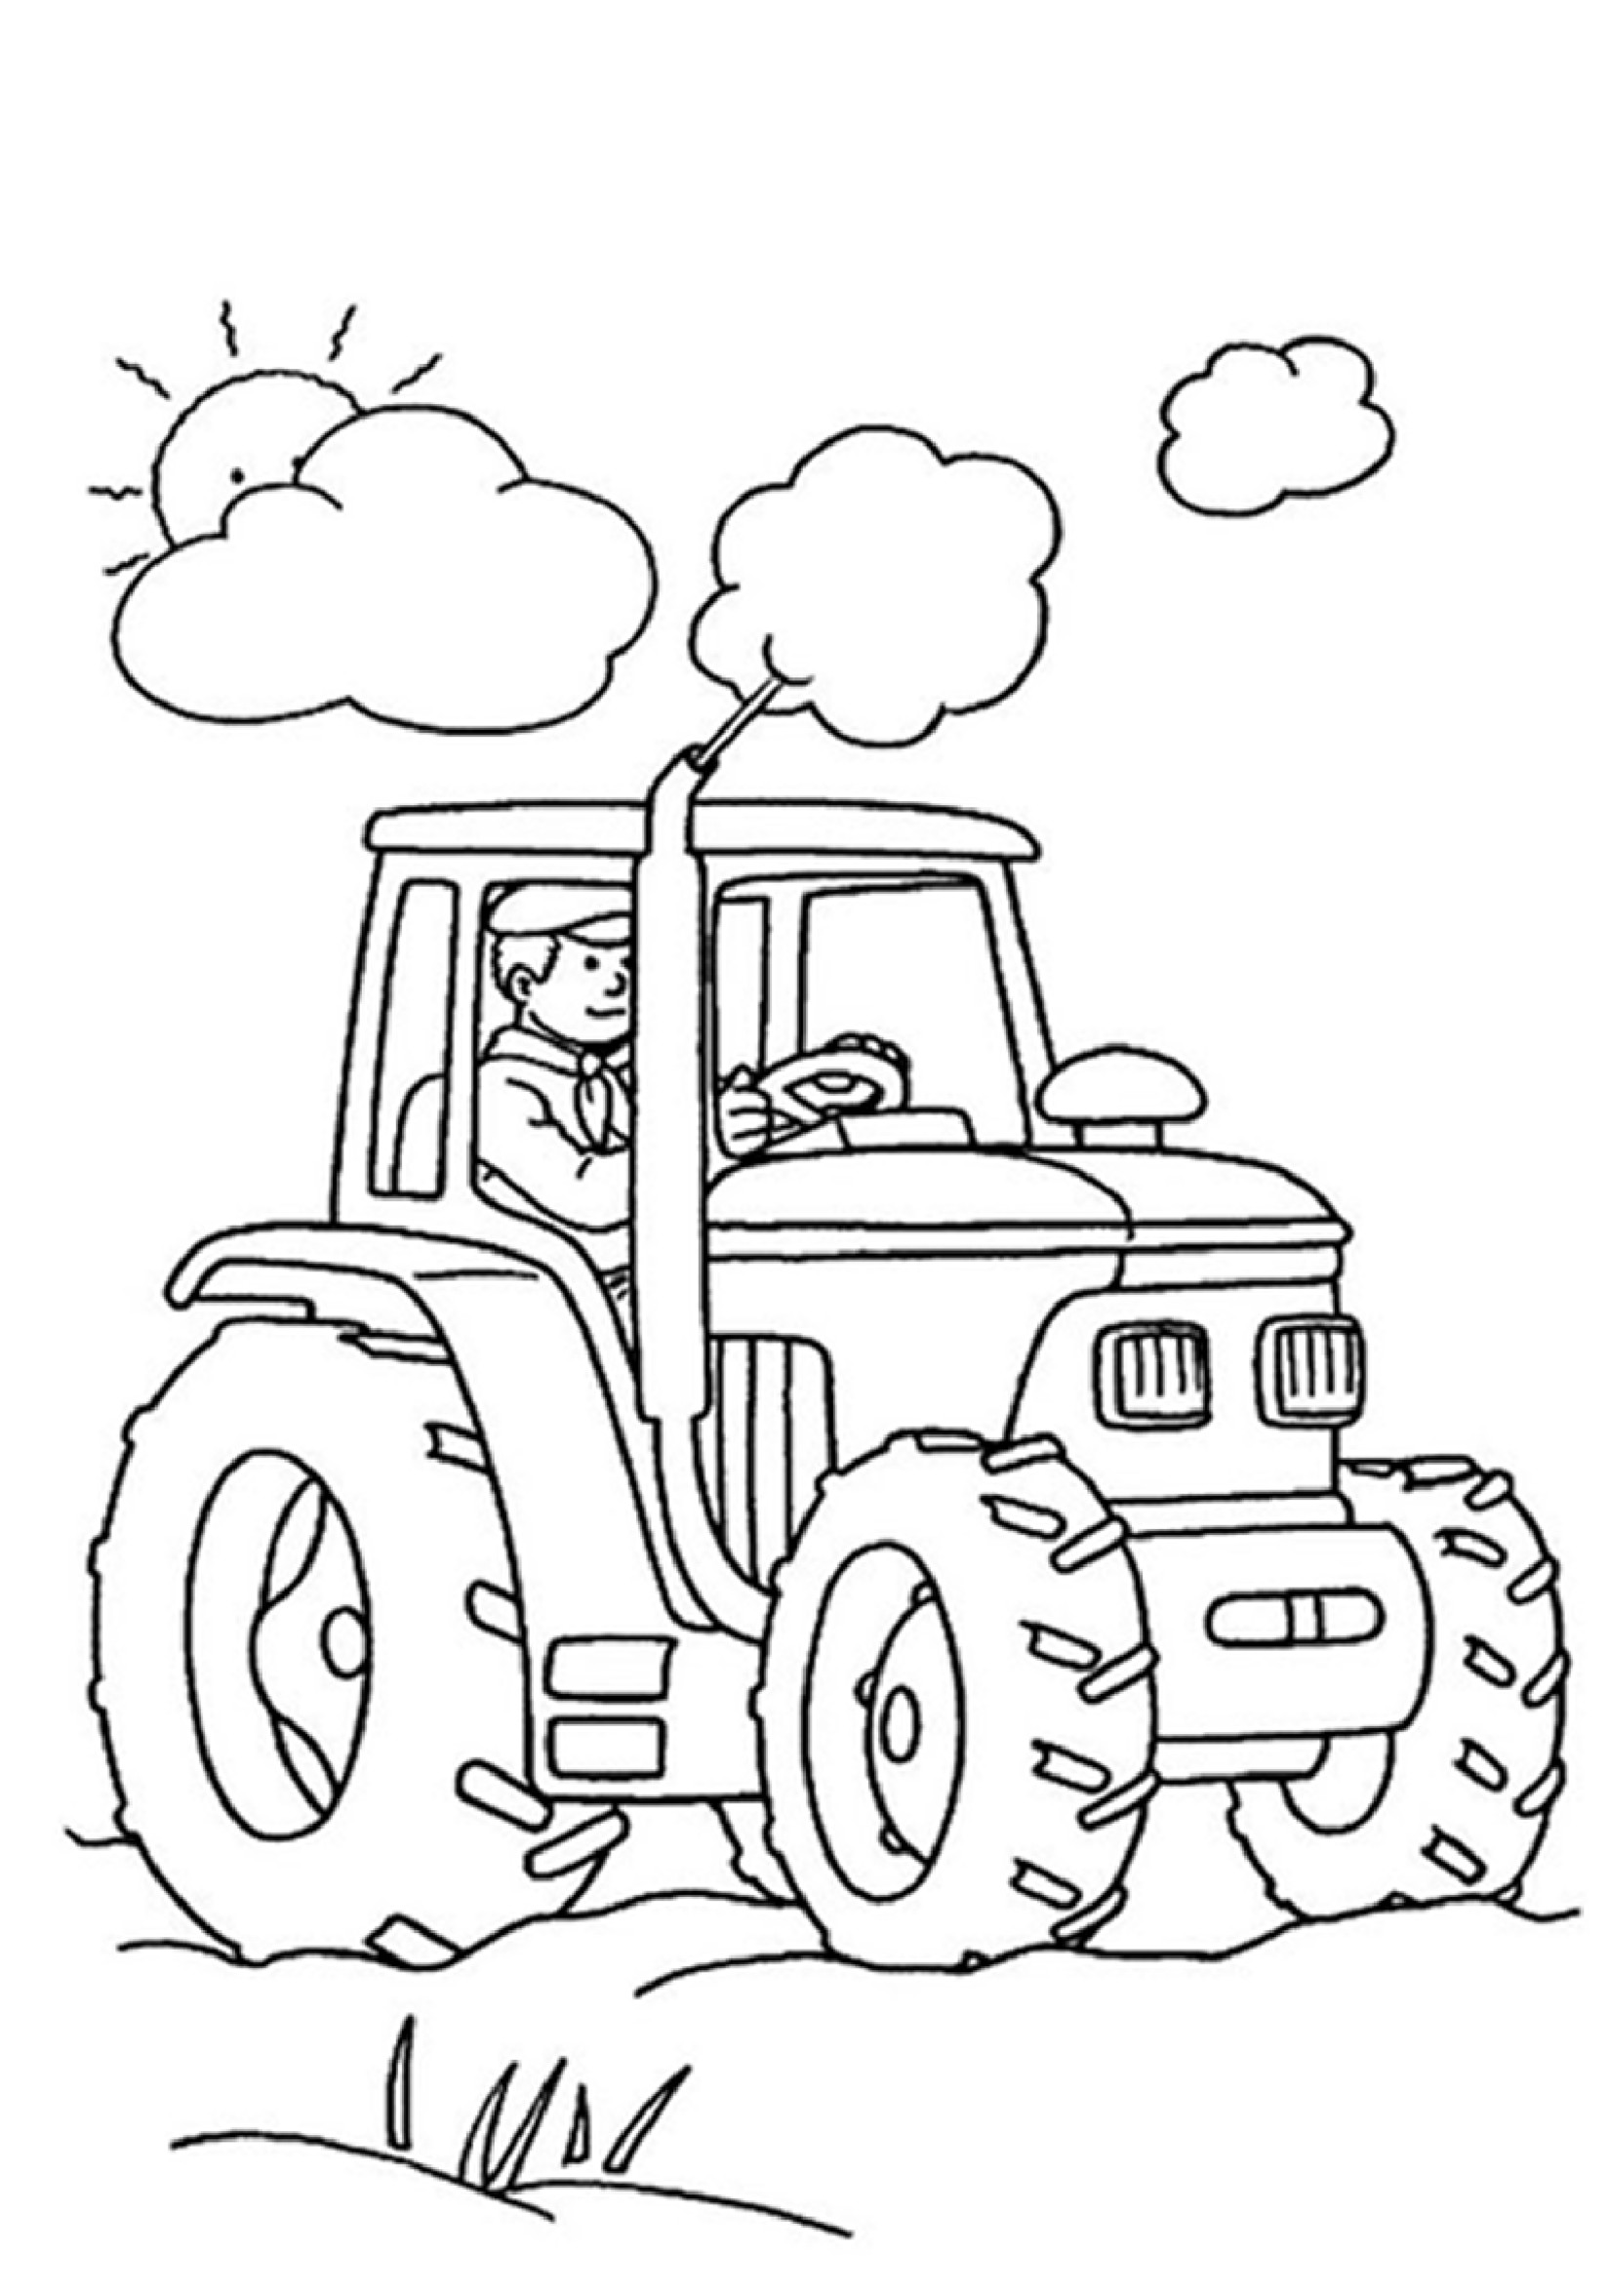 Ausmalbilder Malvorlagen
 Ausmalbilder traktor kostenlos Malvorlagen zum